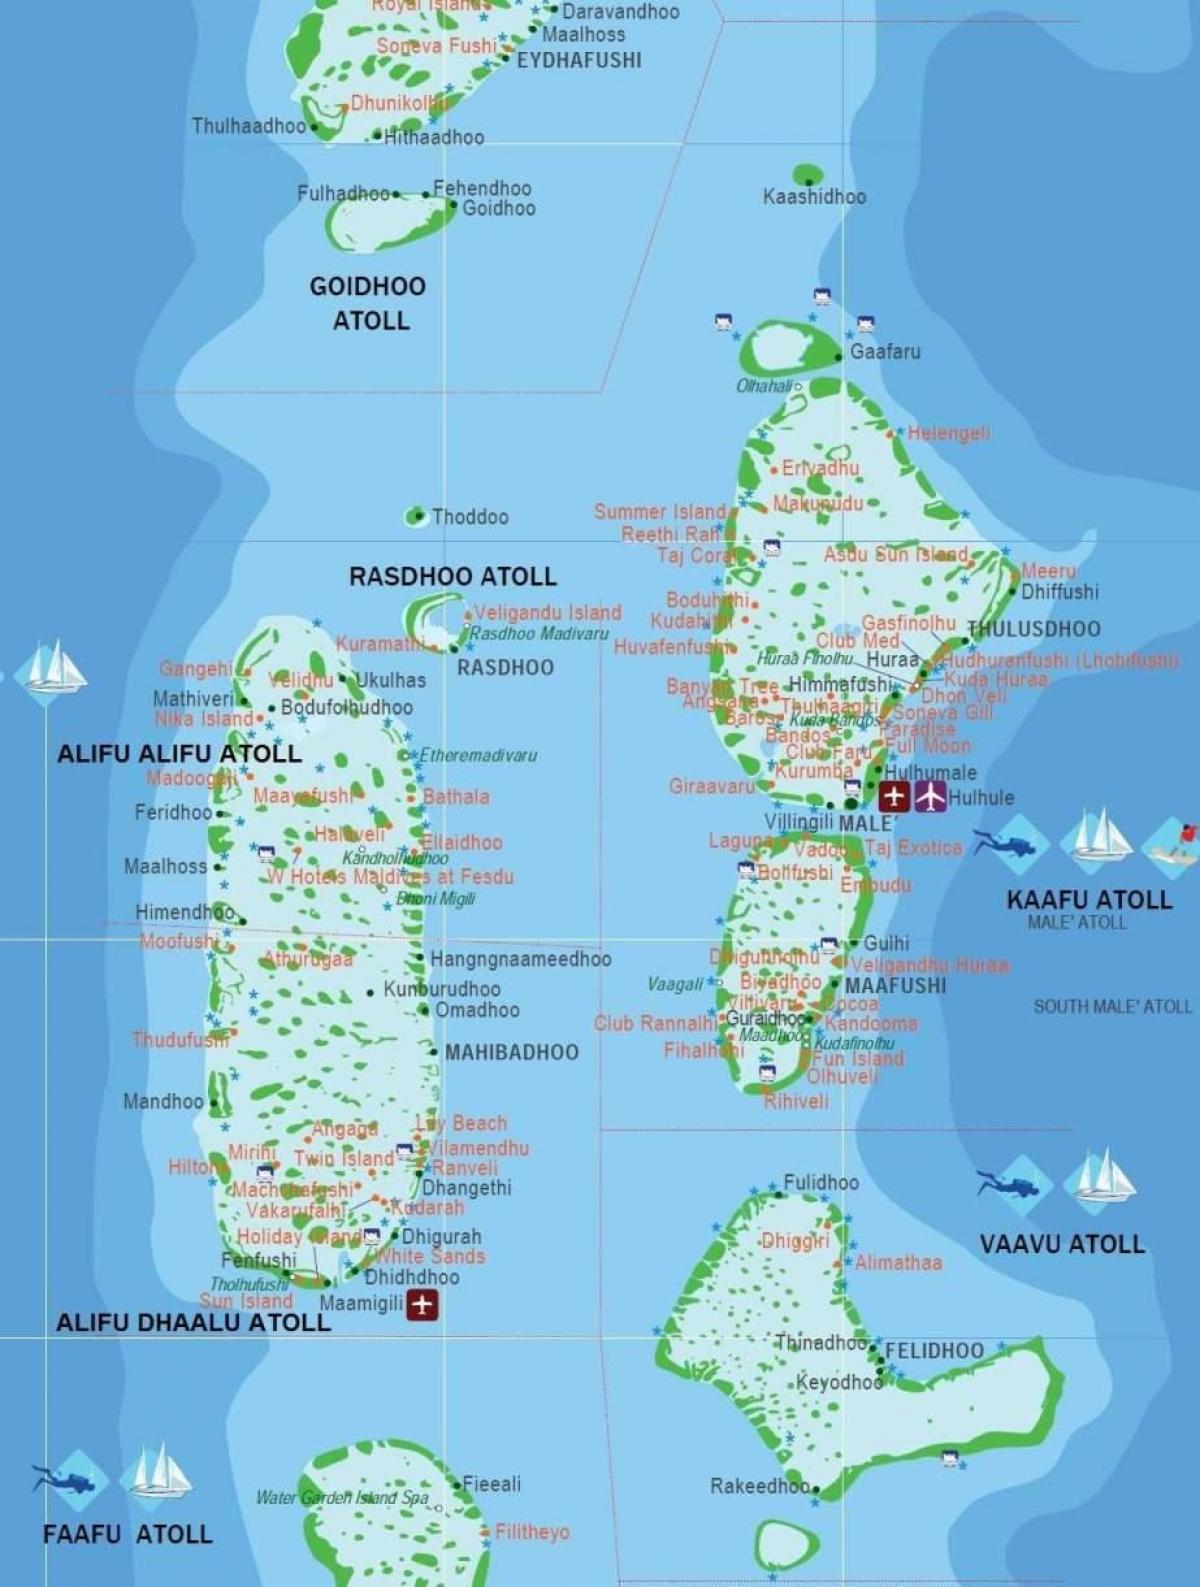 μαλδίβες χώρα στον παγκόσμιο χάρτη